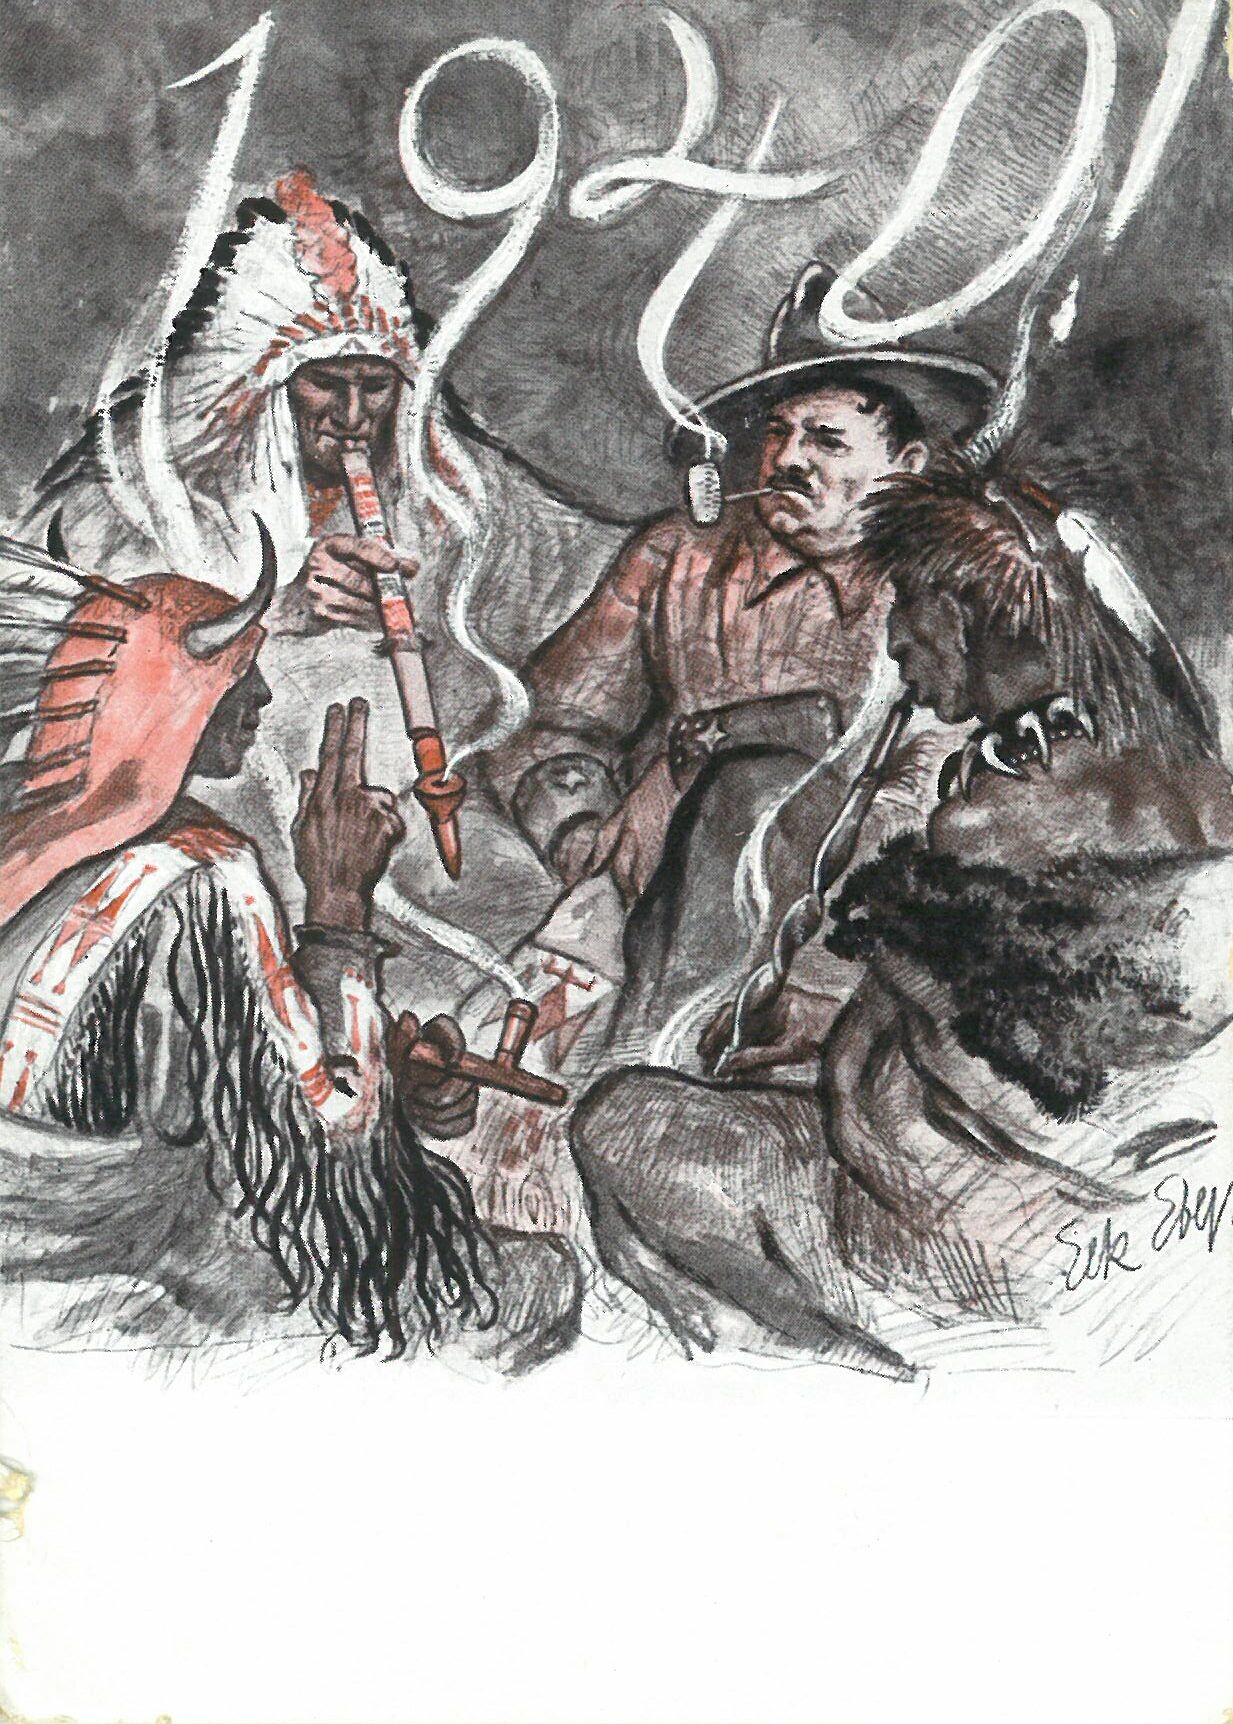 Zeichnung Patty Frank mit 3 Indigenen; 1940; beschrieben (Patty Frank) (Karl-May-Museum gGmbH RR-R)